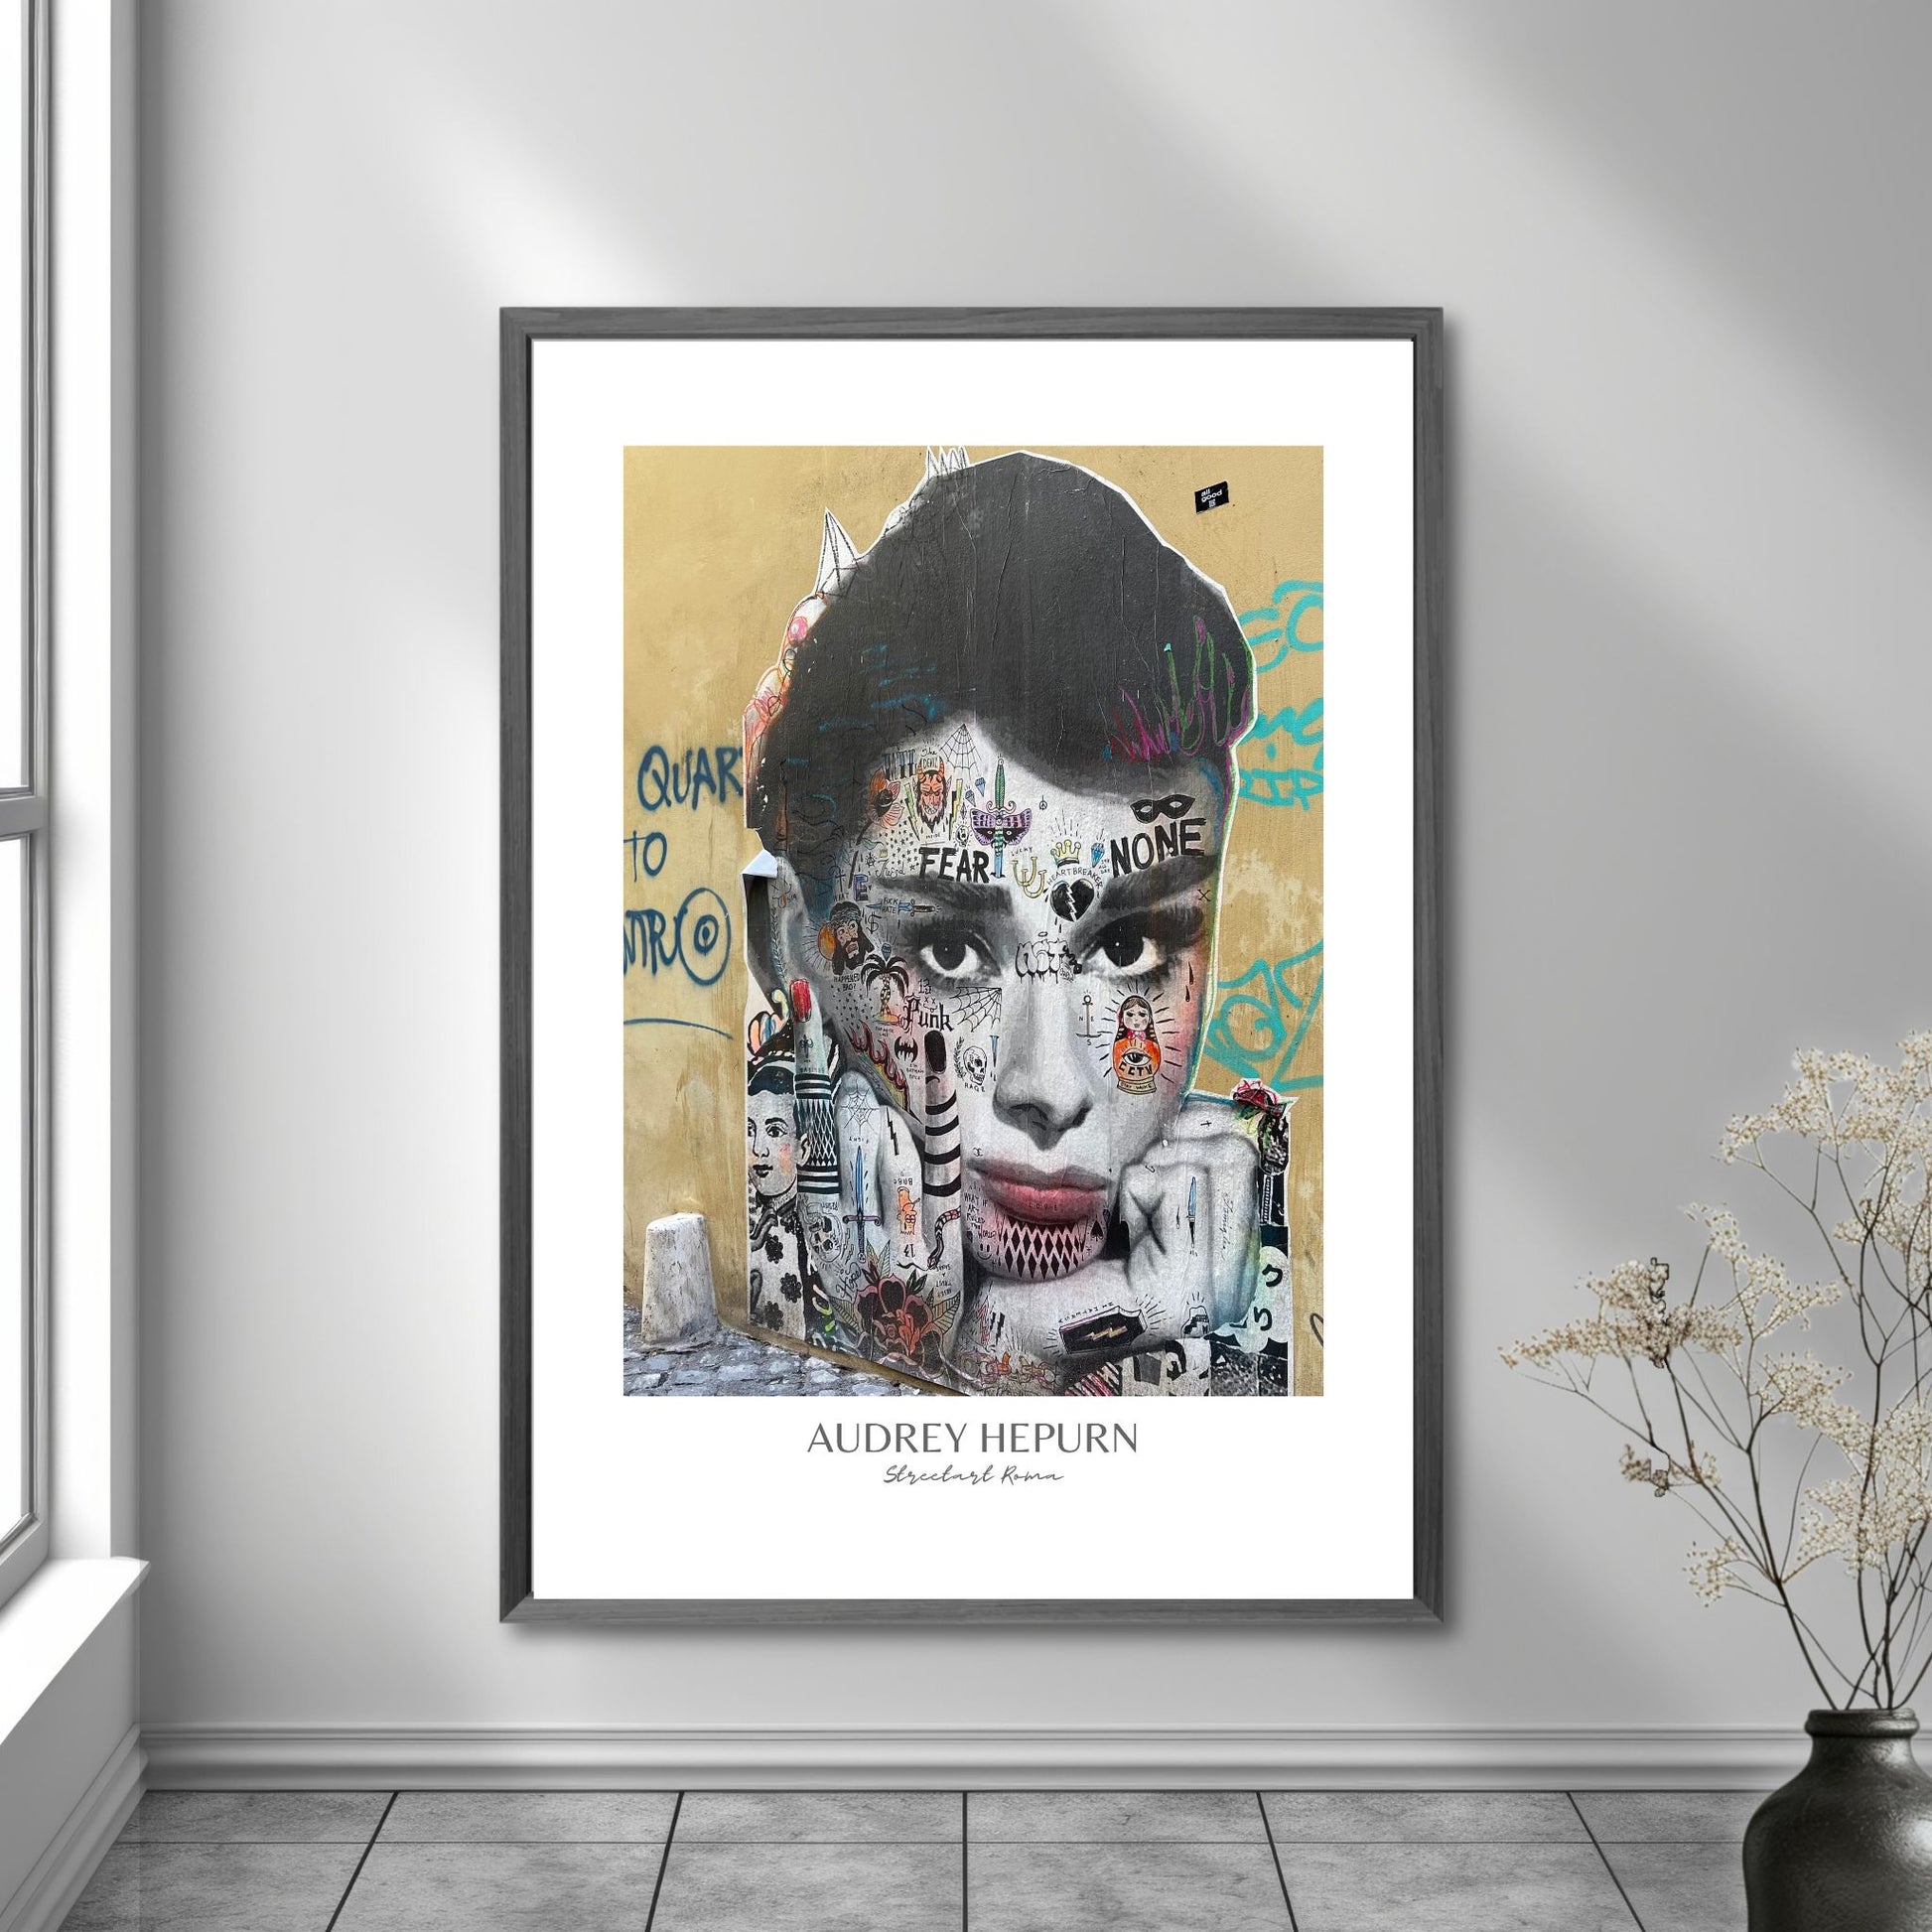 La deg bli transportert til den pulserende gatemiljøet i Roma med "Audrey Hepburn" plakat. Dette paste up kunstverket, inspirert av den ikoniske skuespilleren, gir en smakebit av den unike gatekunsten som preger byen. Illystrasjonen viser motivet i mørk ramme på en vegg.